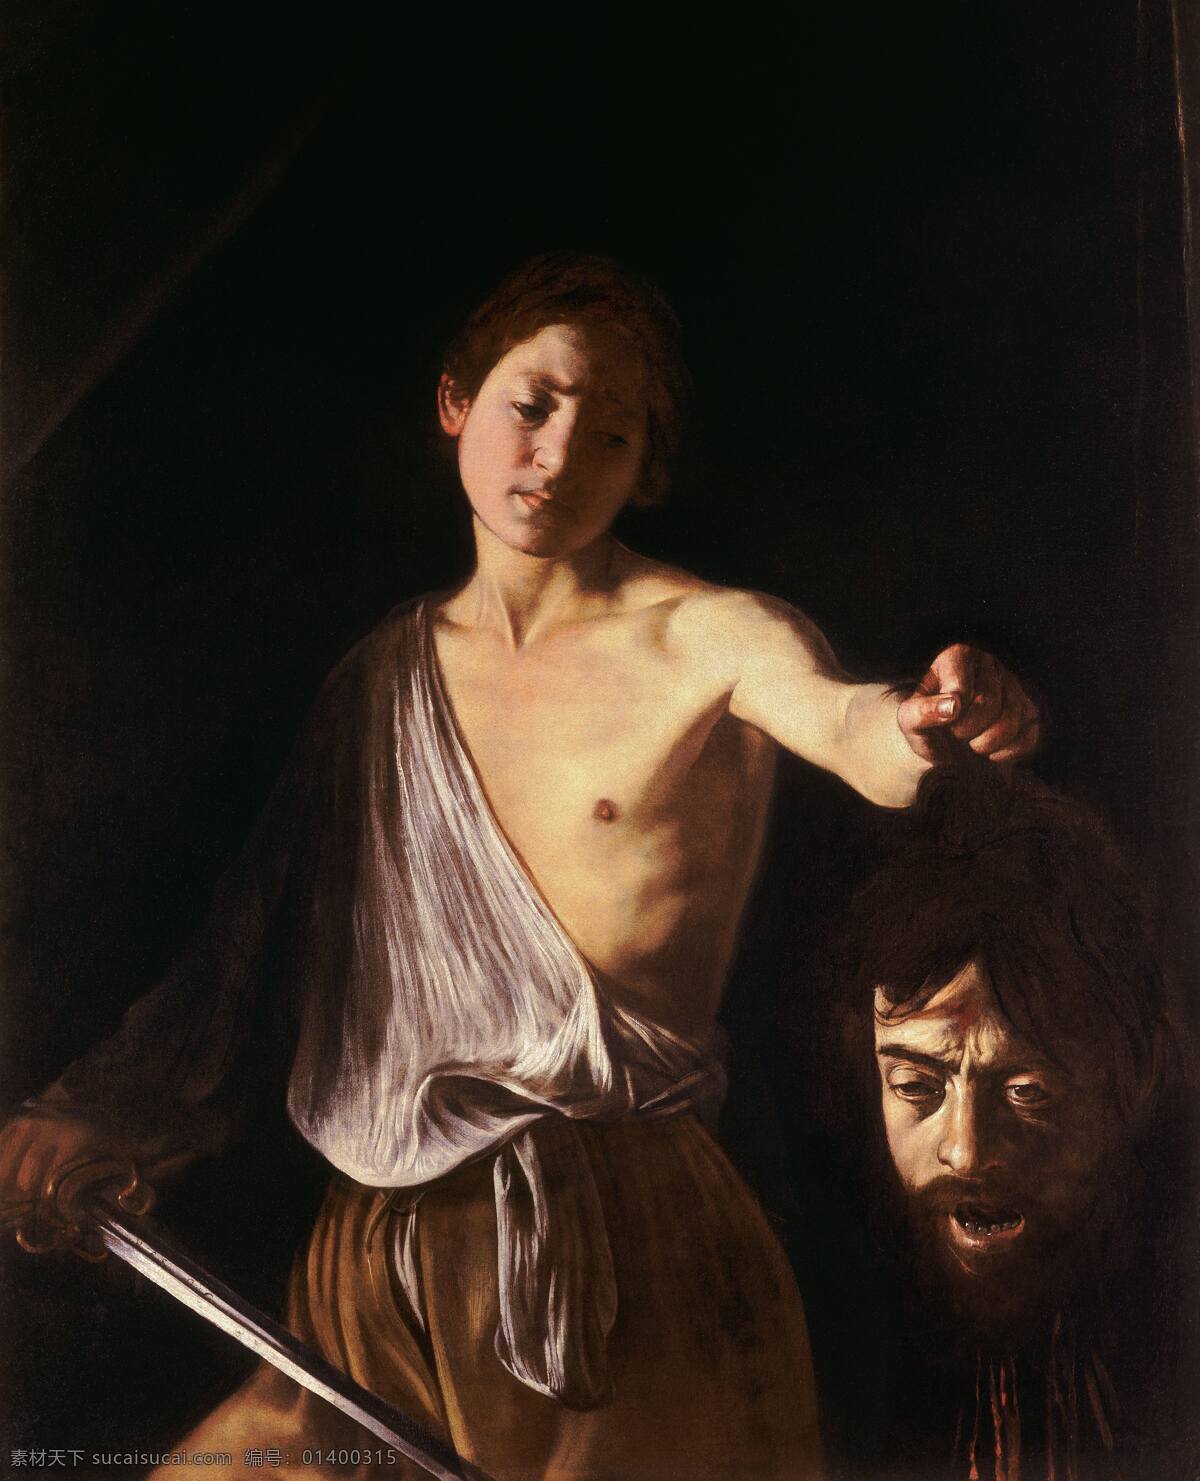 大卫 歌 利 亚 头 卡拉瓦乔 剑 唯美 油画艺术 古典油画 写实油画 油画人物 绘画 艺术 文化艺术 绘画书法